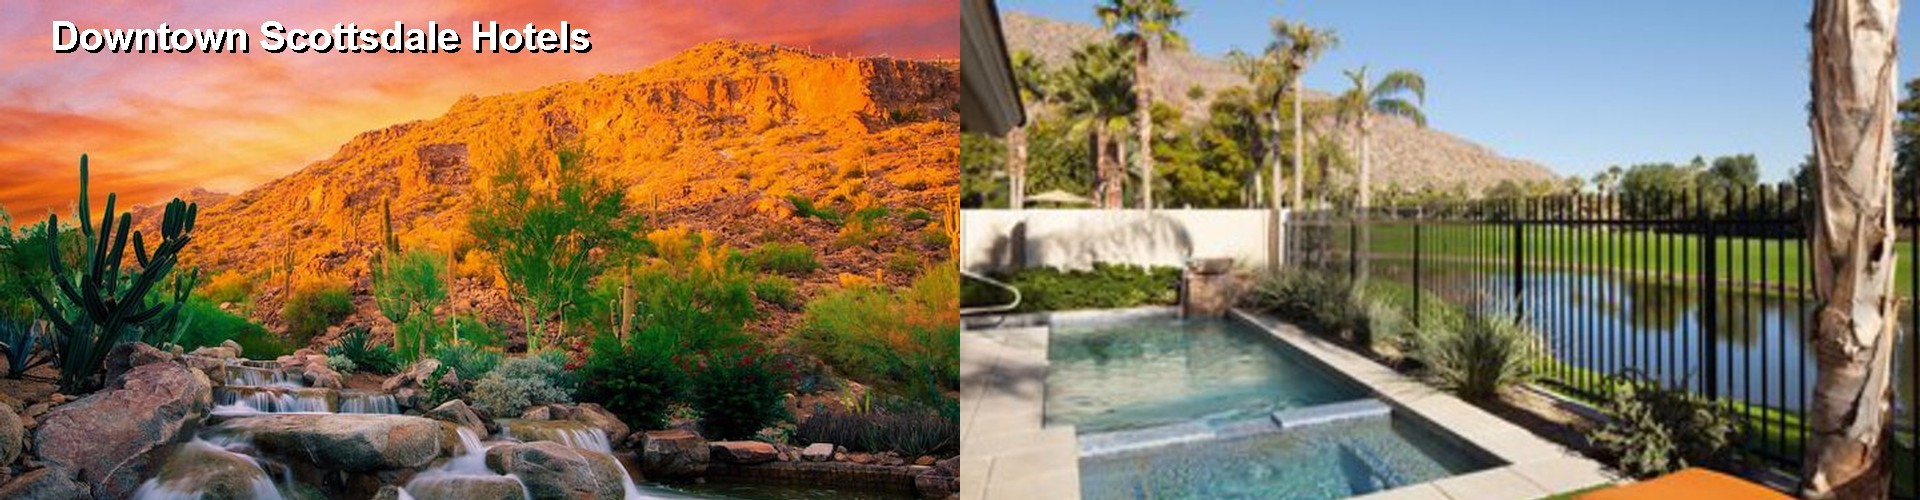 4 Best Hotels near Downtown Scottsdale